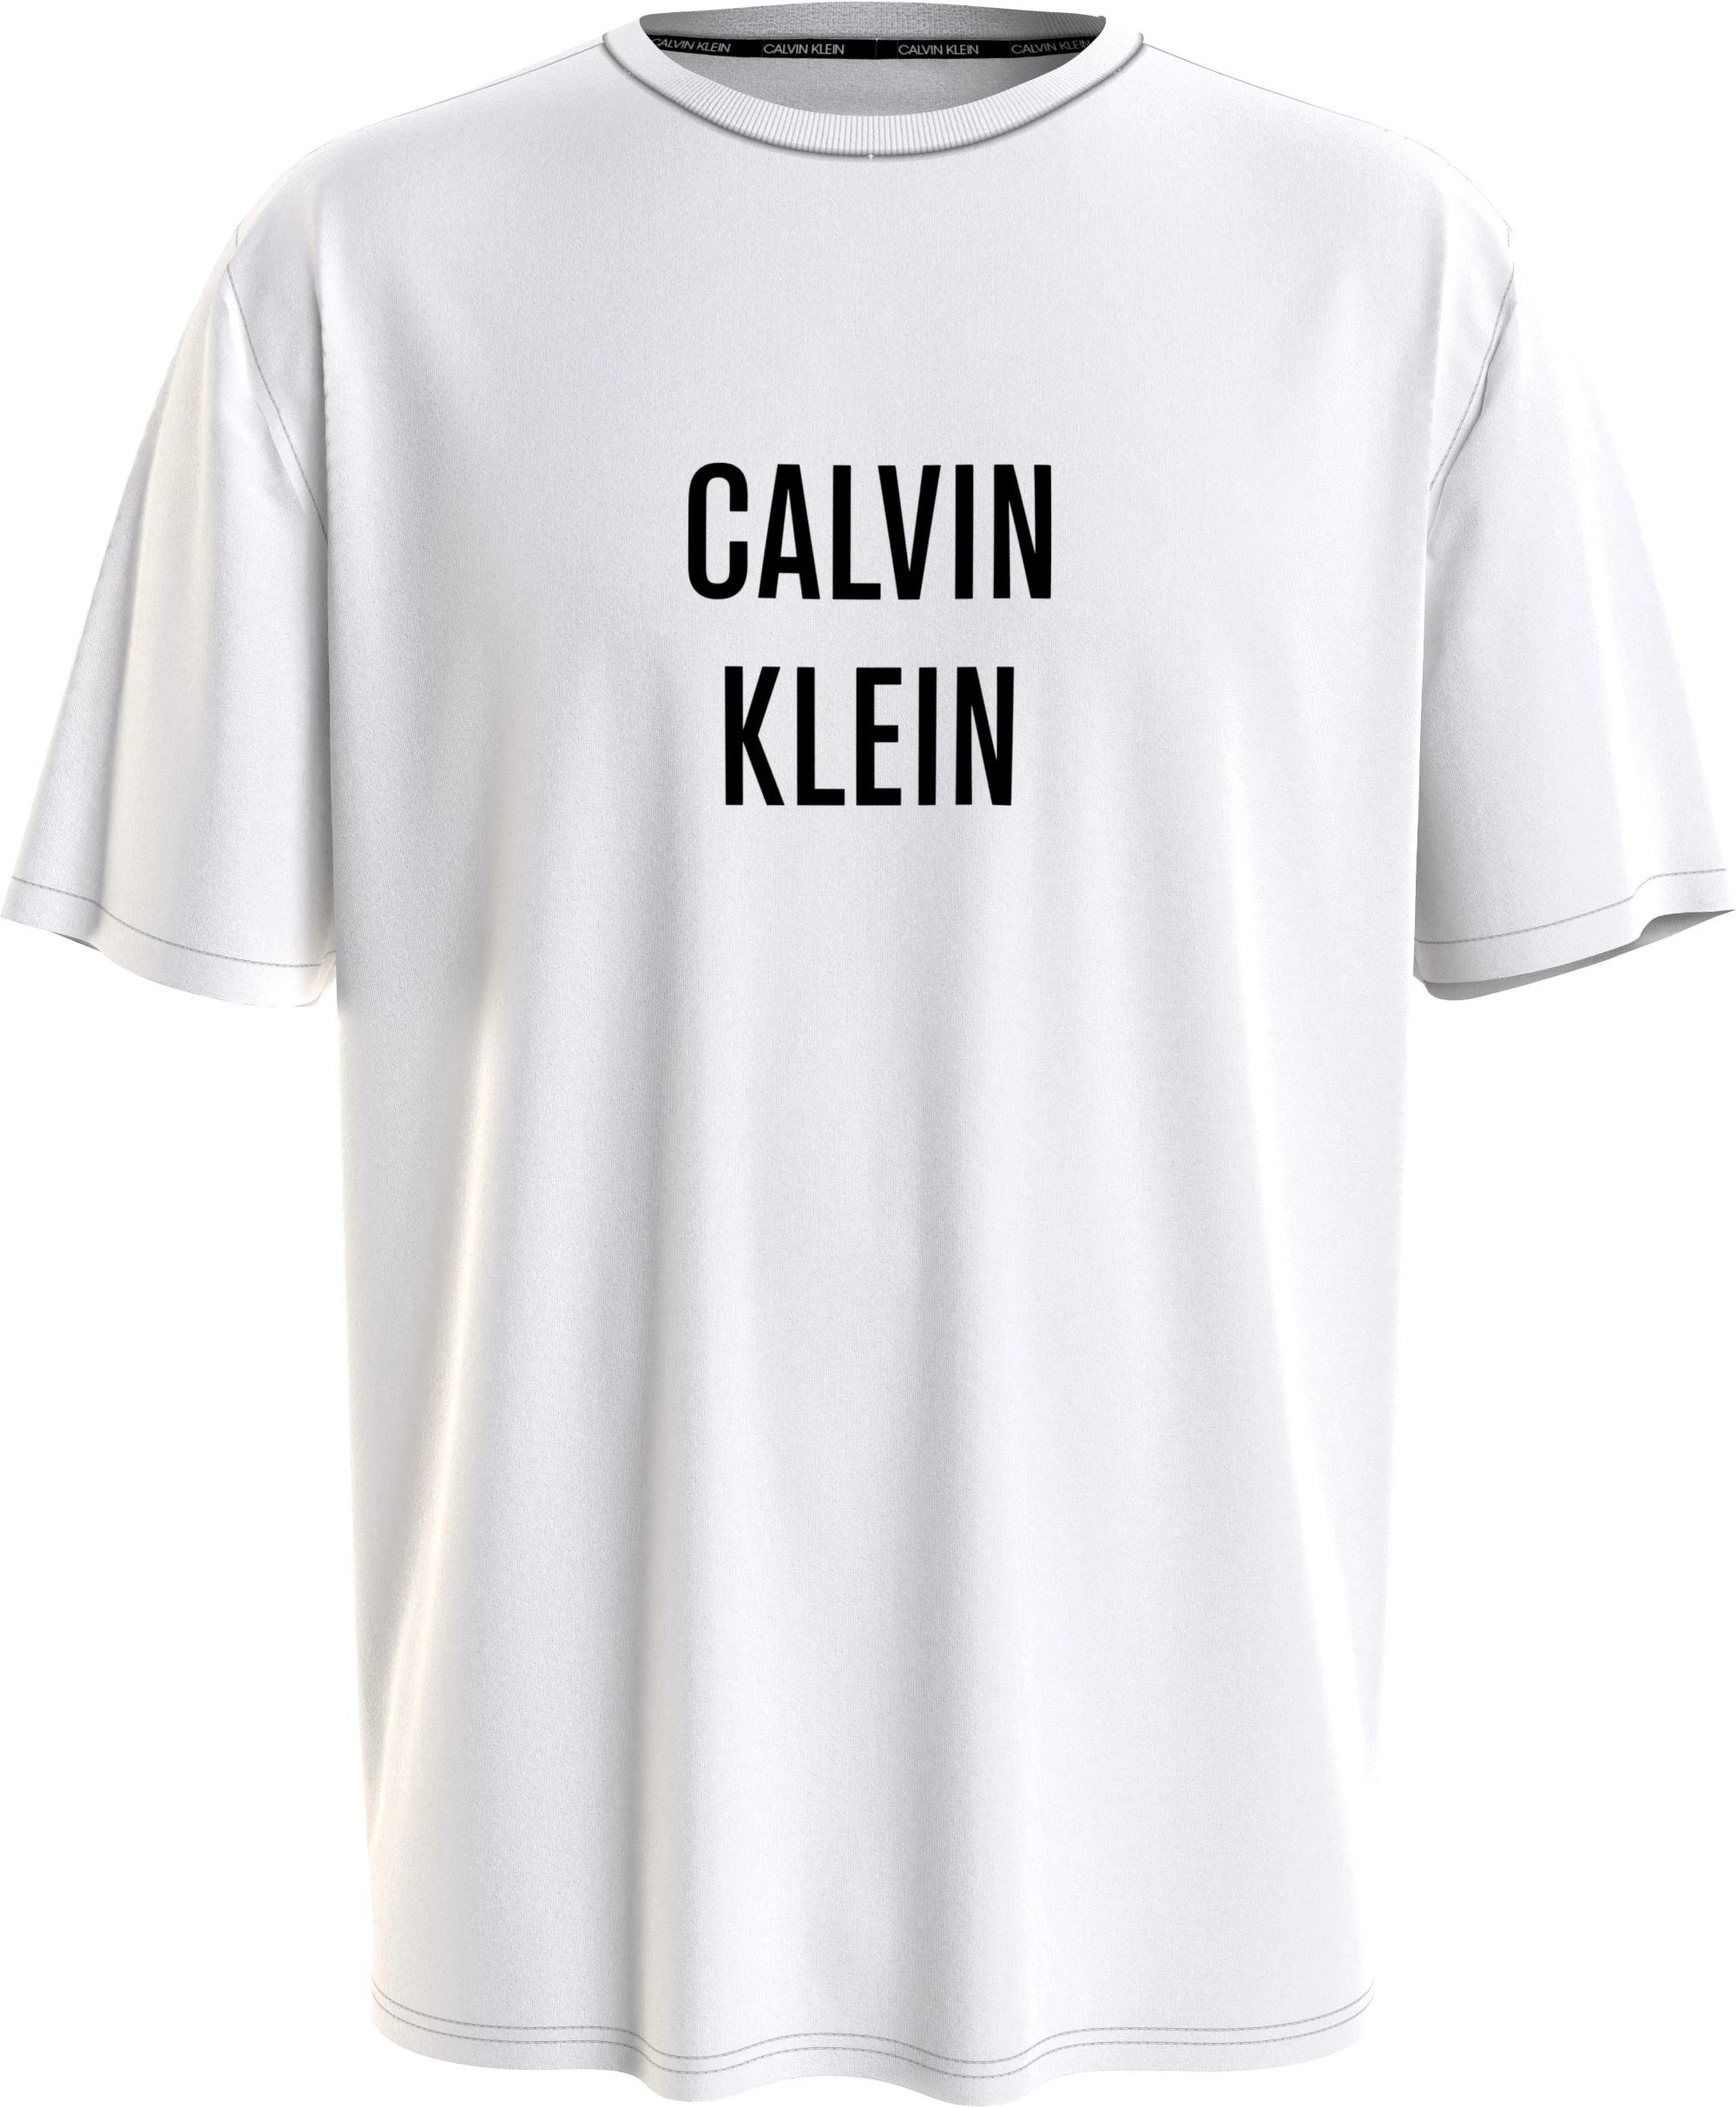 Calvin Klein Relaxed Crew casaul t-shirt da